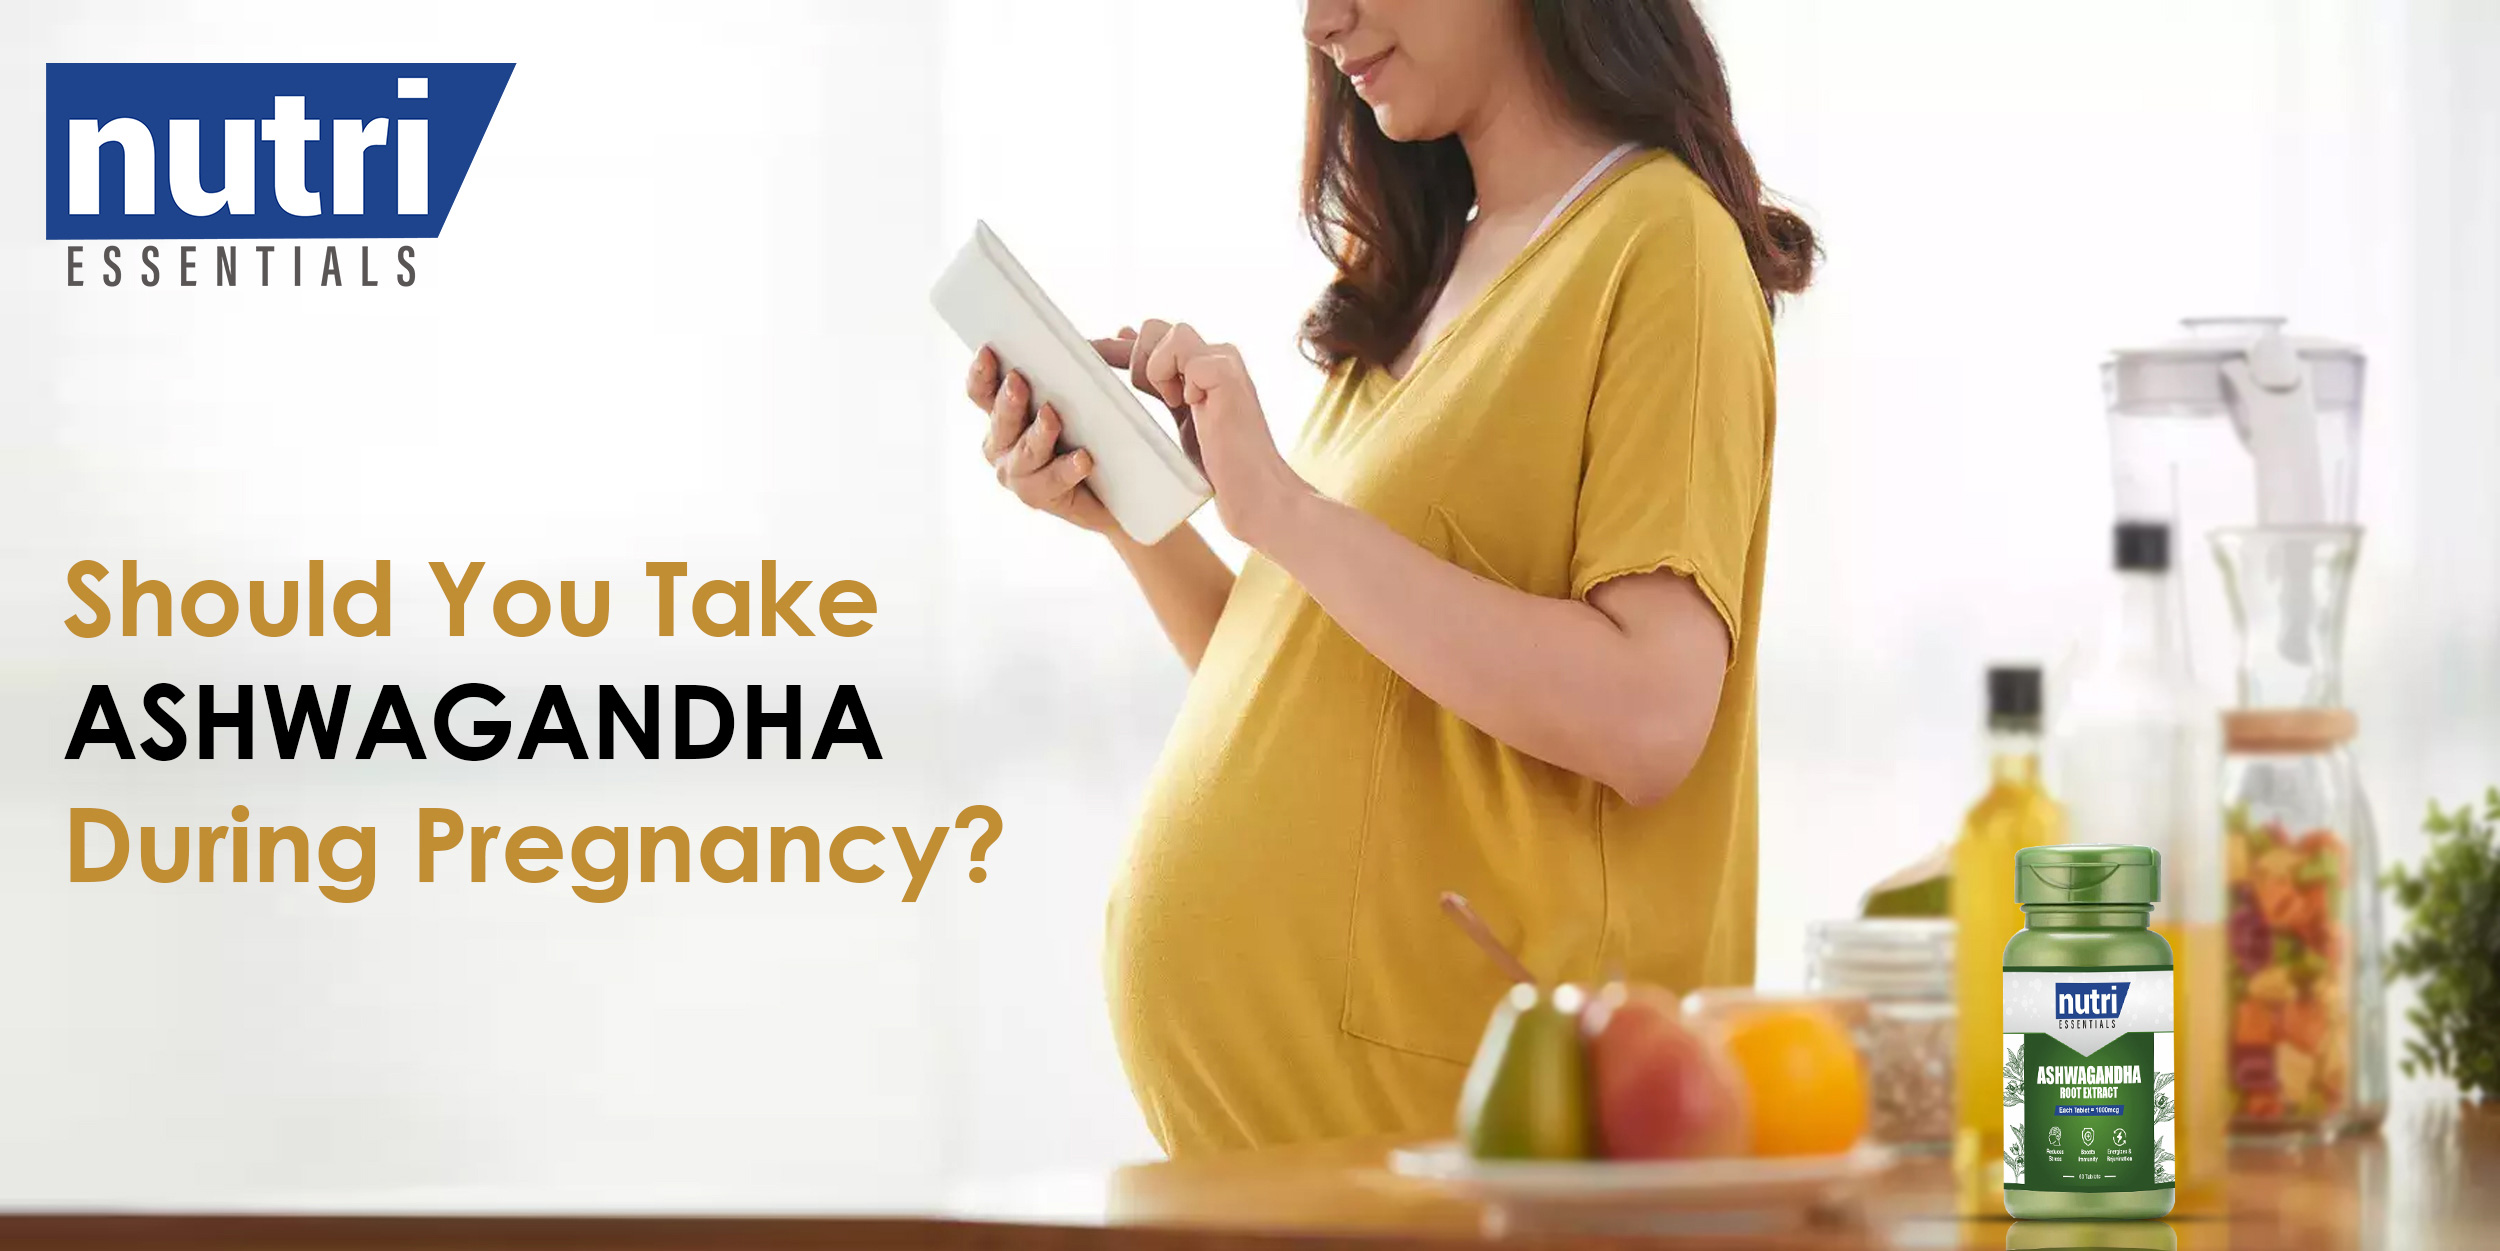 SHOULD YOU TAKE ASHWAGANDHA DURING PREGNANCY?